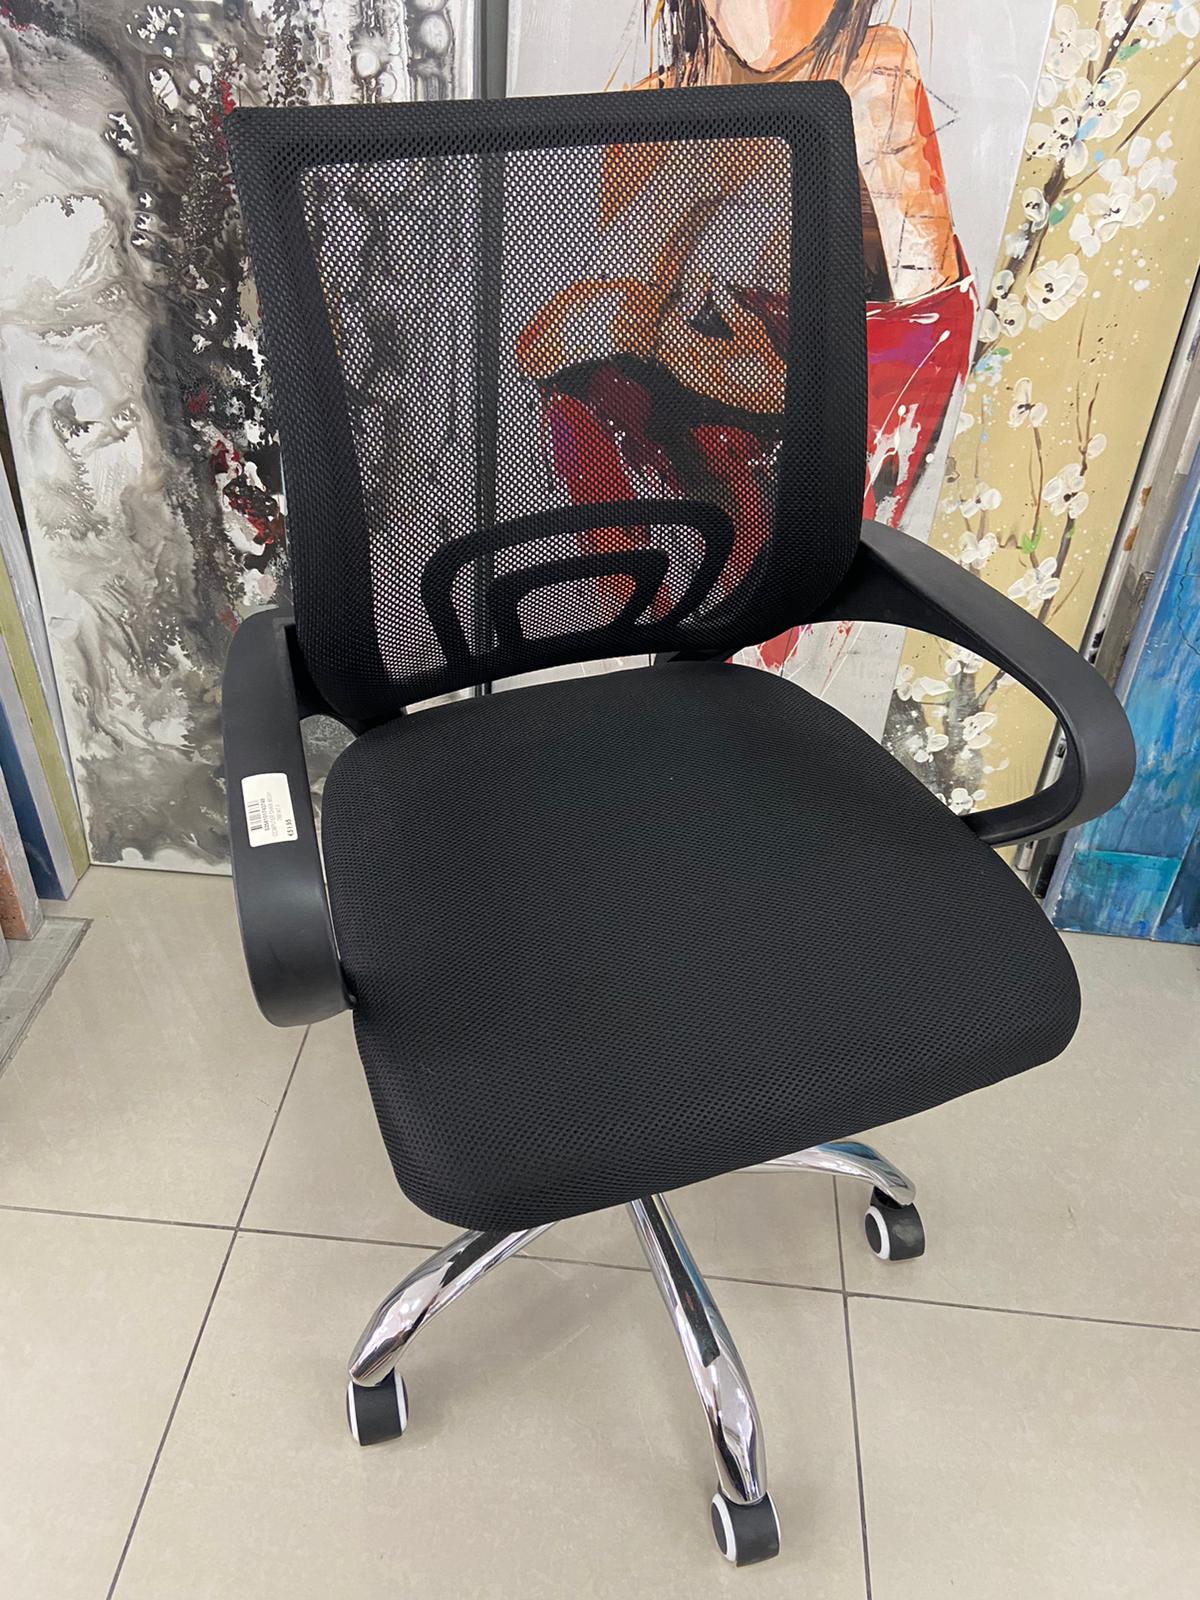 Desk chair no headrest